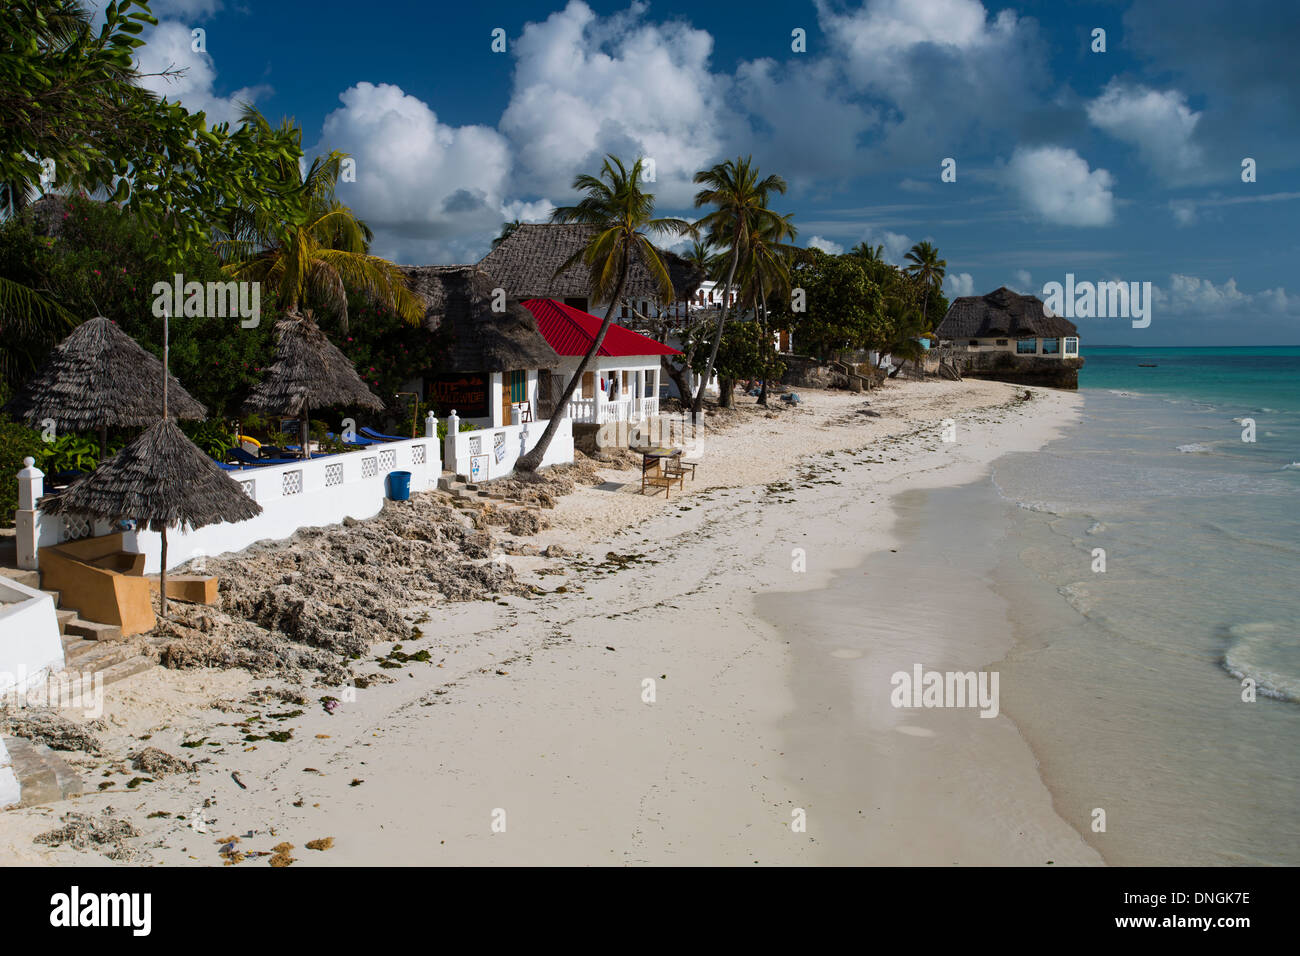 La plage de Jambiani, sud-est de Zanzibar, Tanzanie Banque D'Images